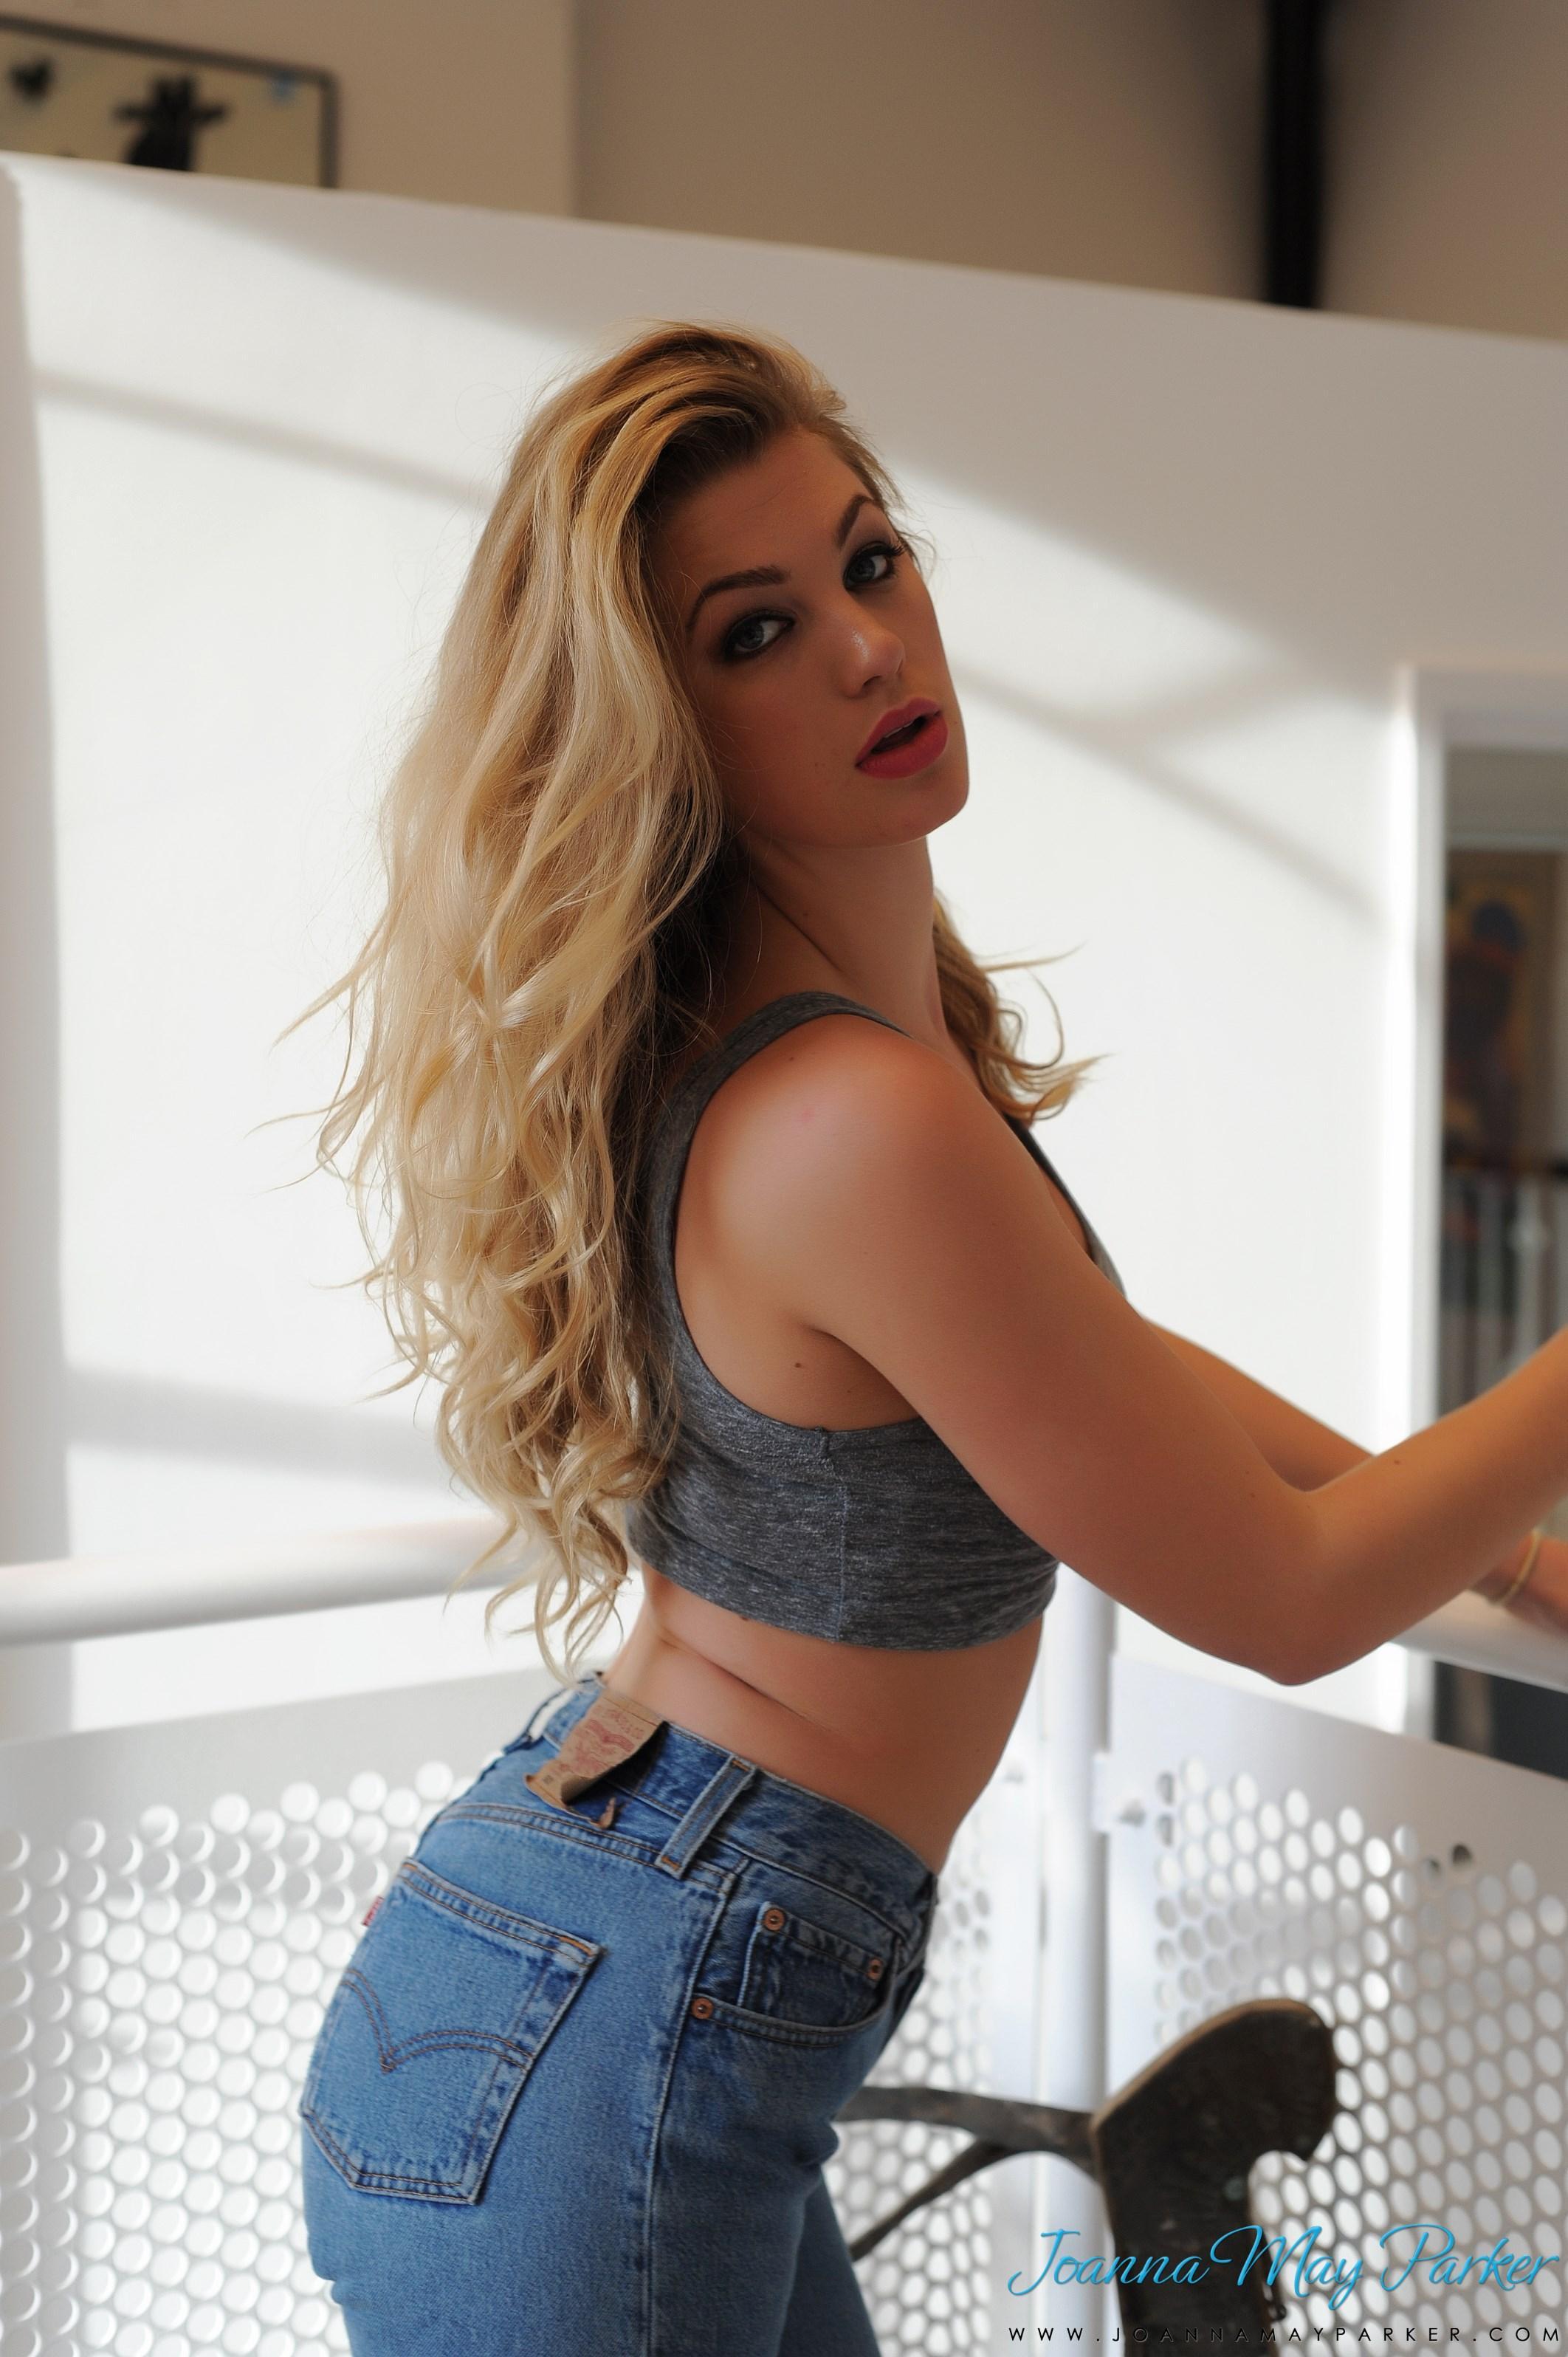 La belle blonde joanna may parker exhibe ses seins ronds dans un jean bleu sexy.
 #55534984